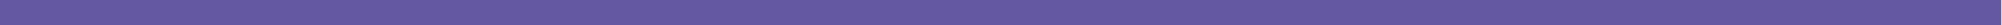 fp-blog-purple